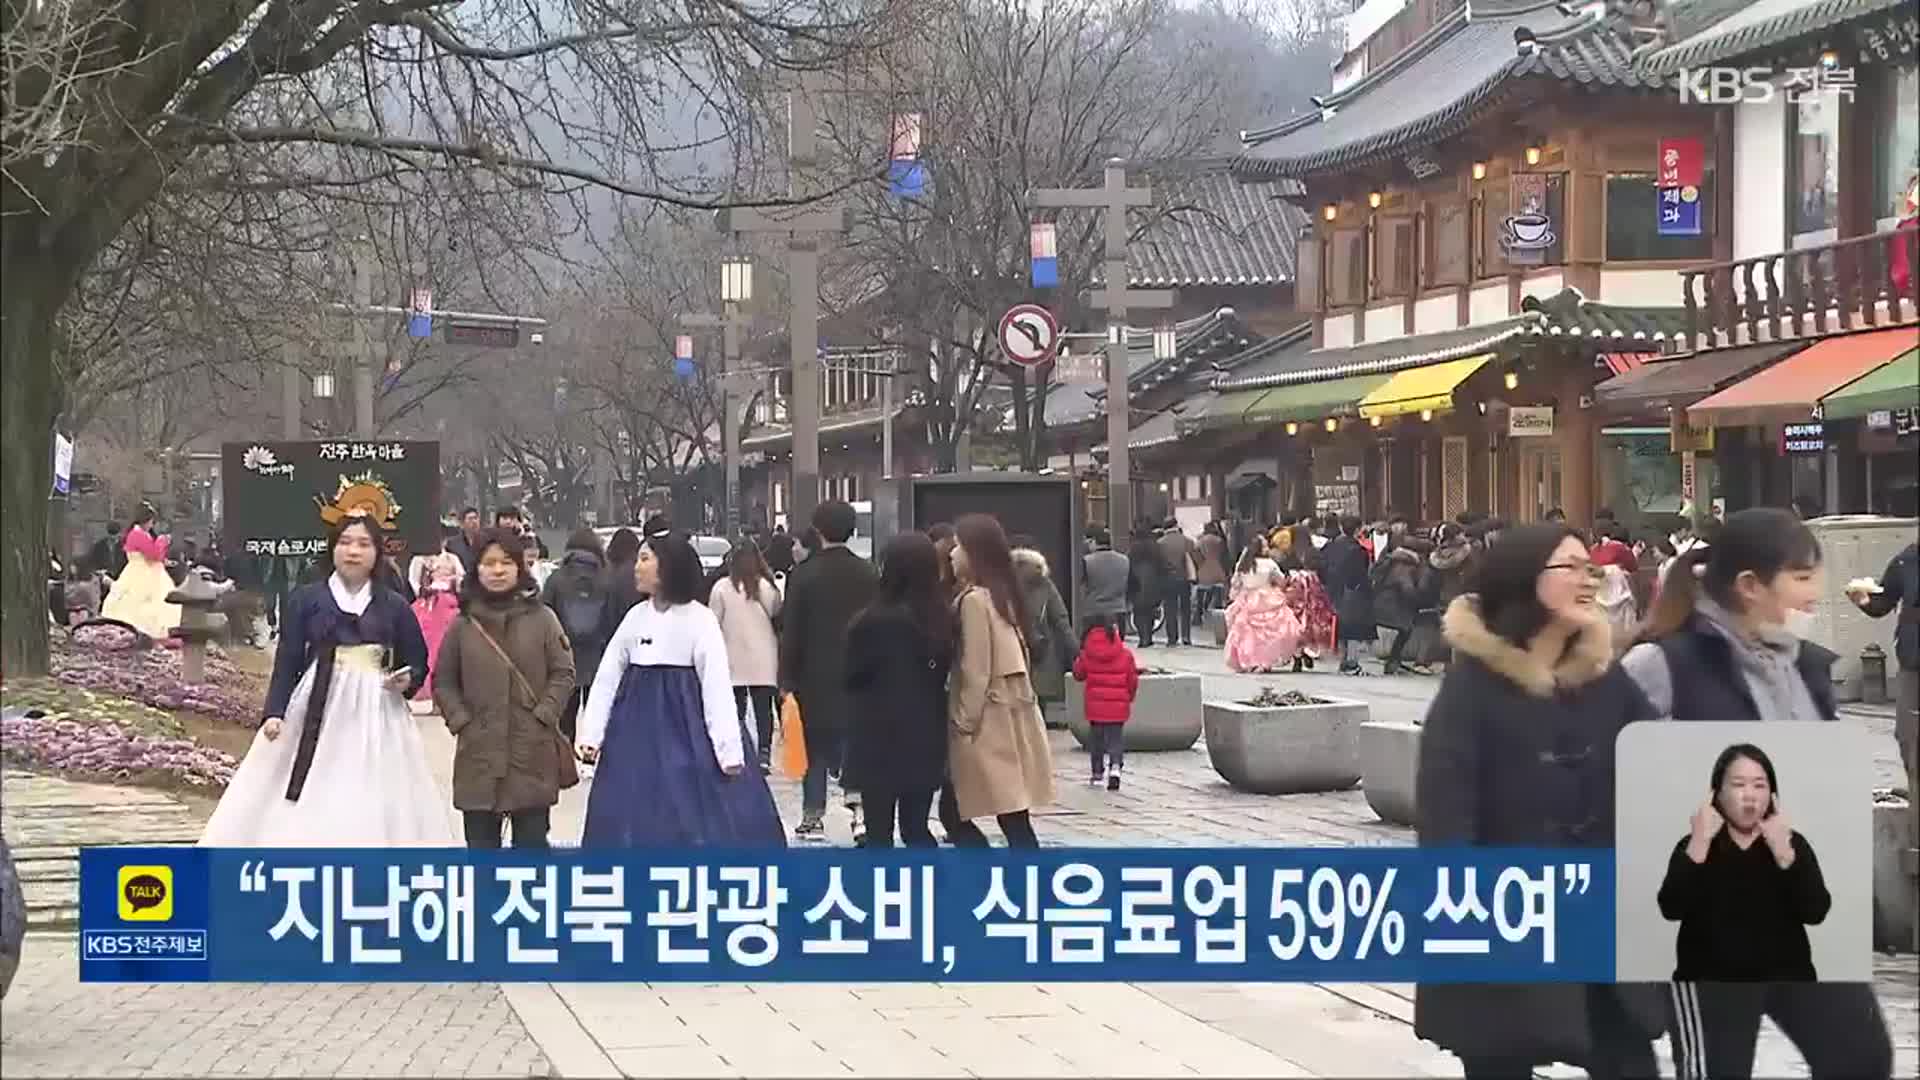 “지난해 전북 관광 소비, 식음료업 59% 쓰여”